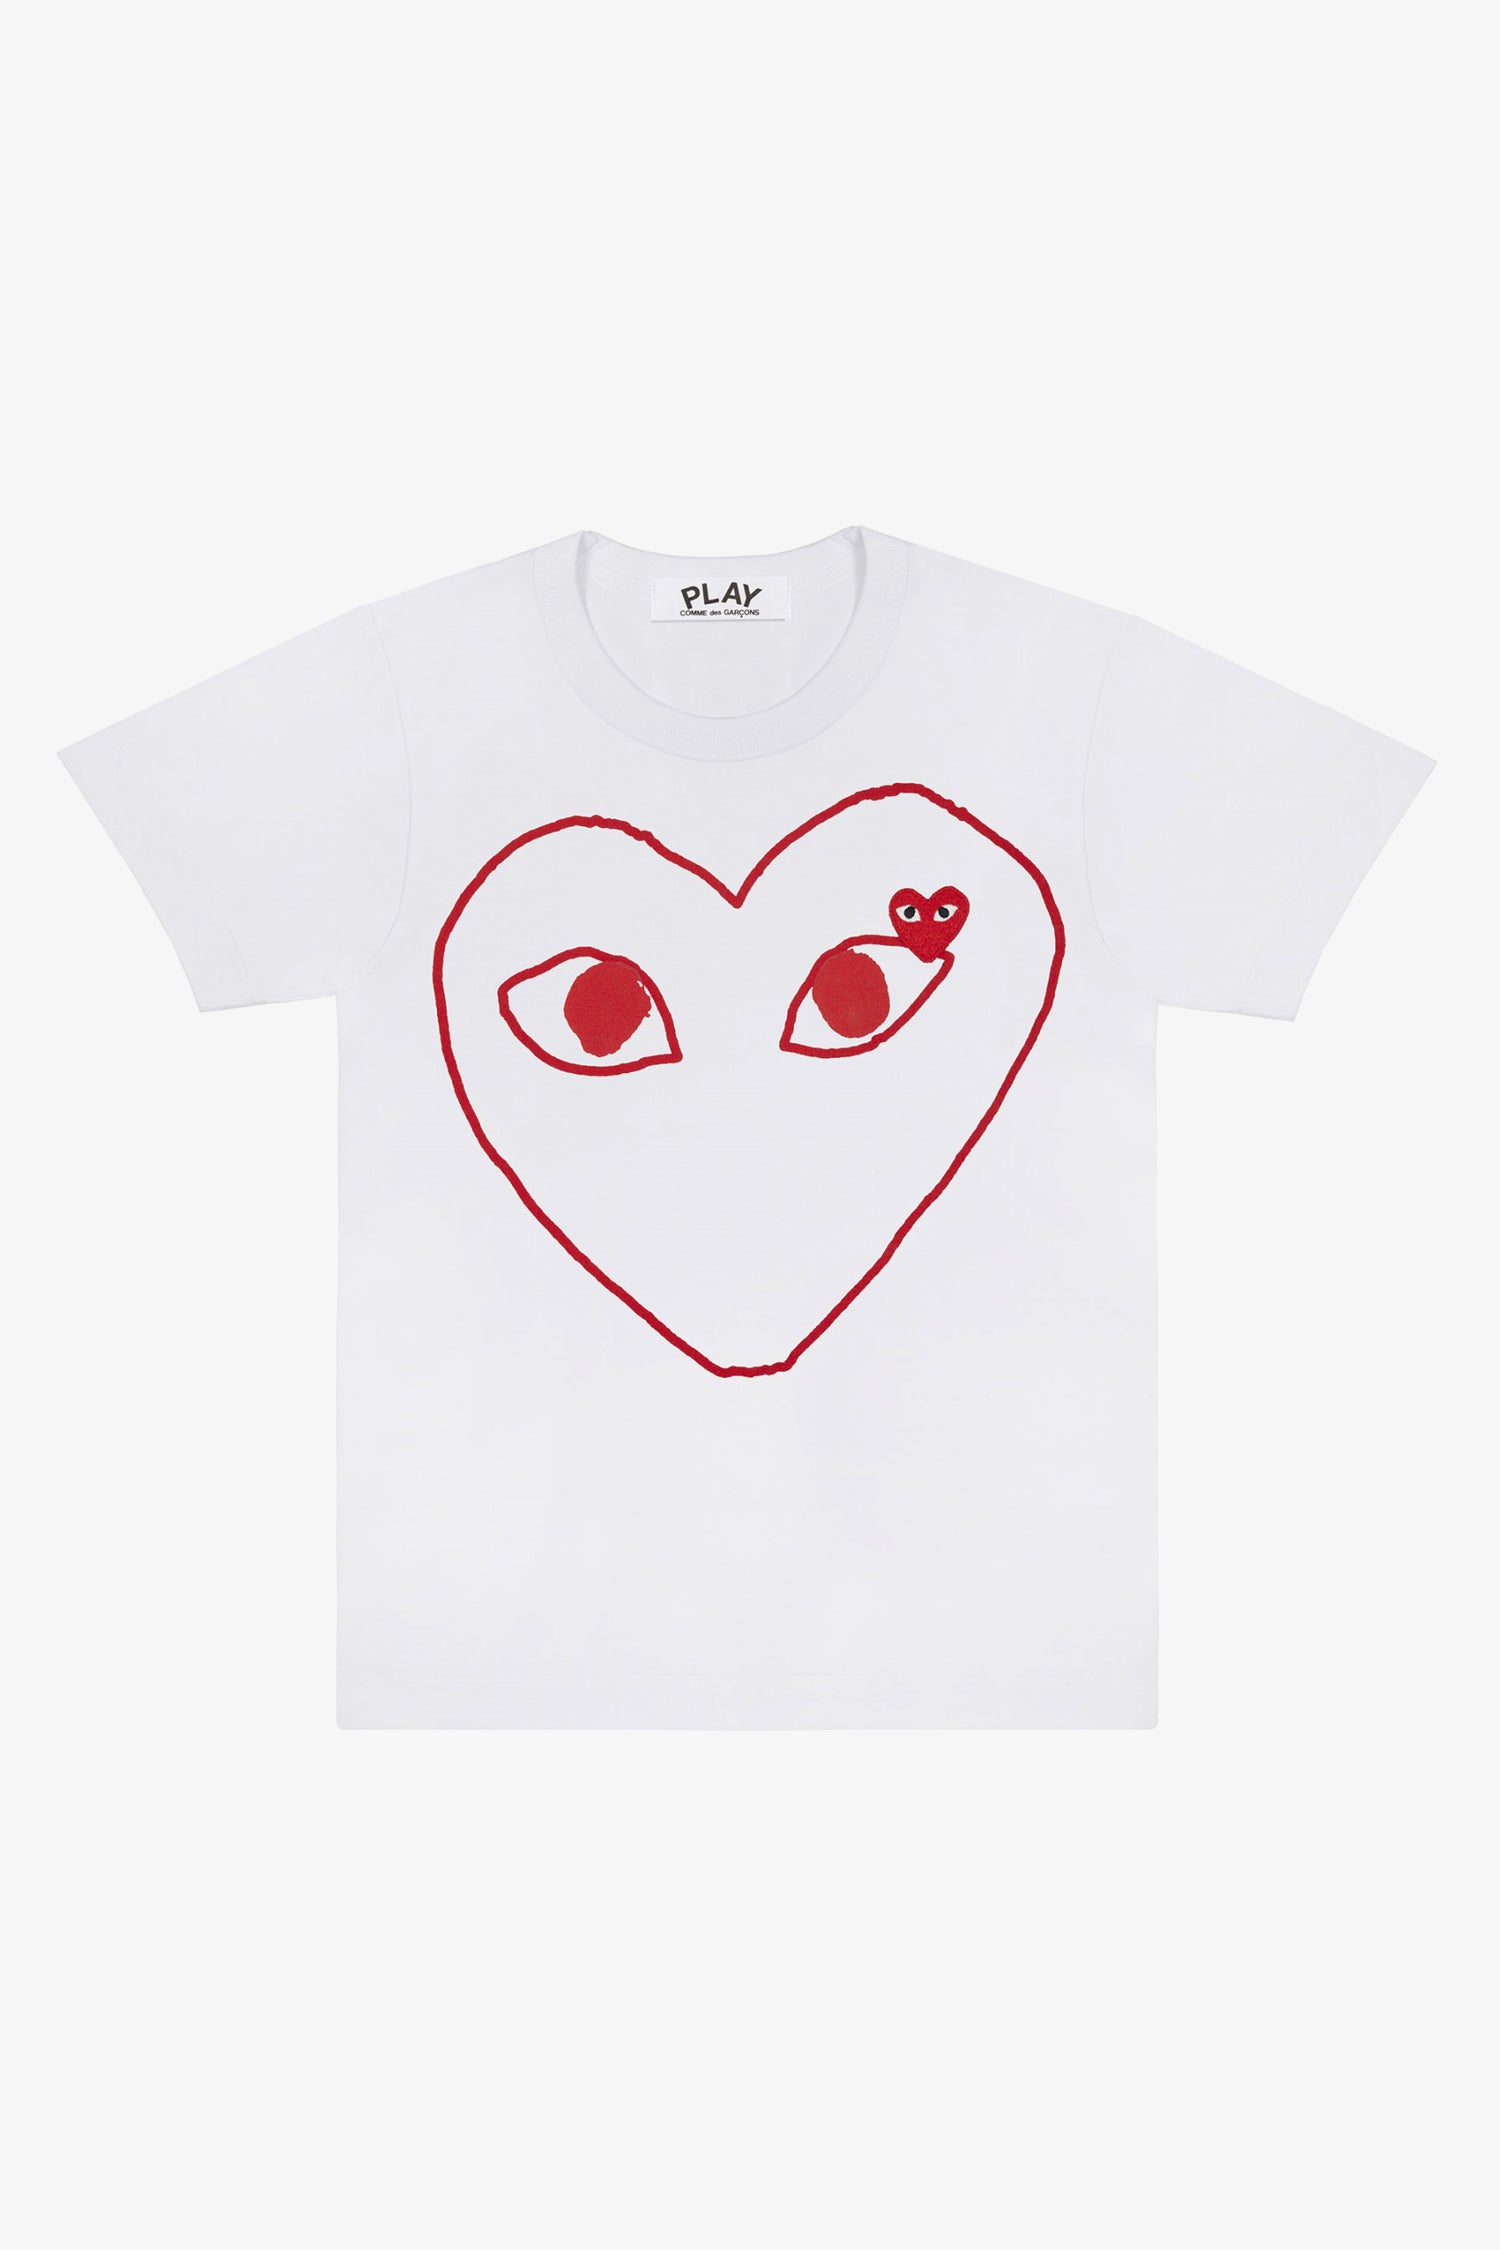 Selectshop FRAME - COMME DES GARCONS PLAY Empty Big Red Heart T-Shirt T-Shirt Dubai